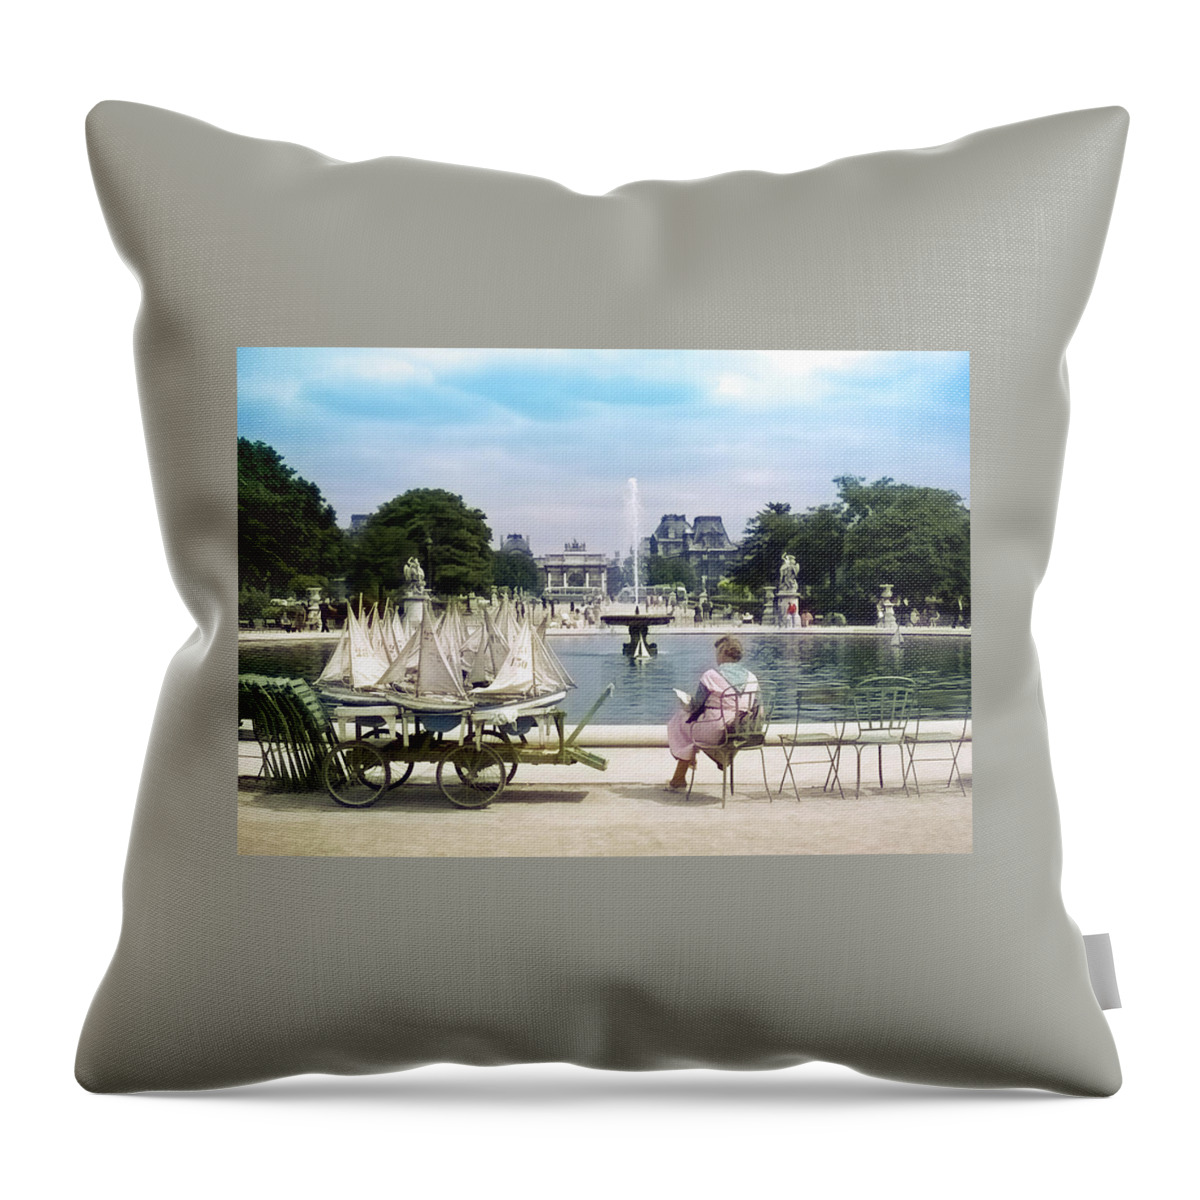 Paris Throw Pillow featuring the photograph Model Sailboat Basin, Paris by Richard Goldman